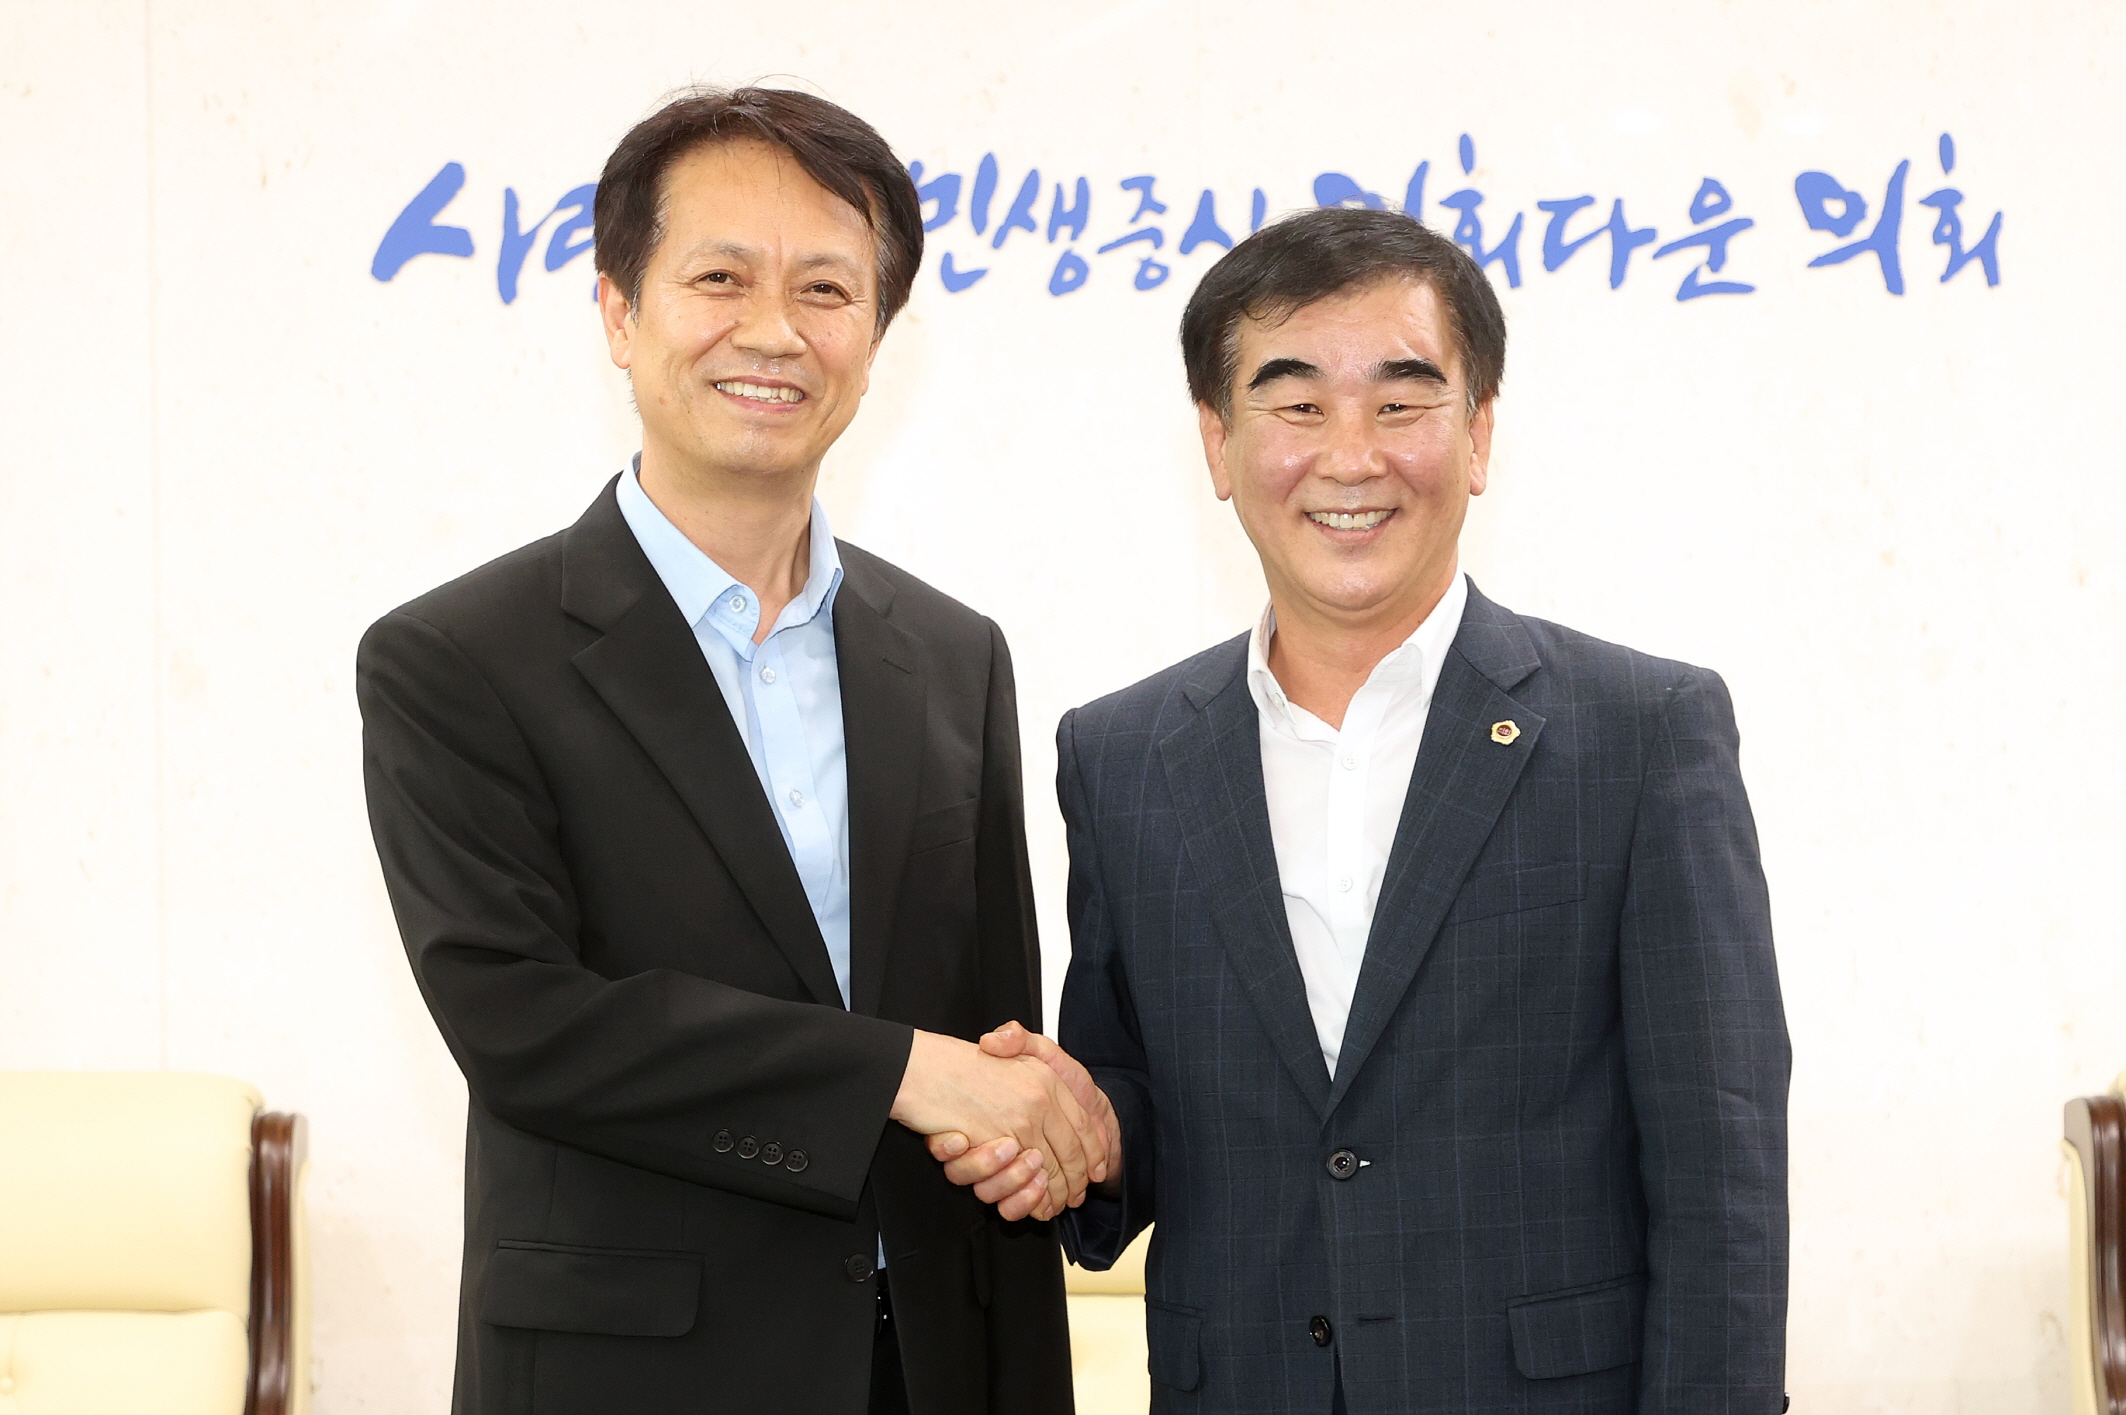 염종현 도의장, 14일 김종보 수원남부경찰서장 접견